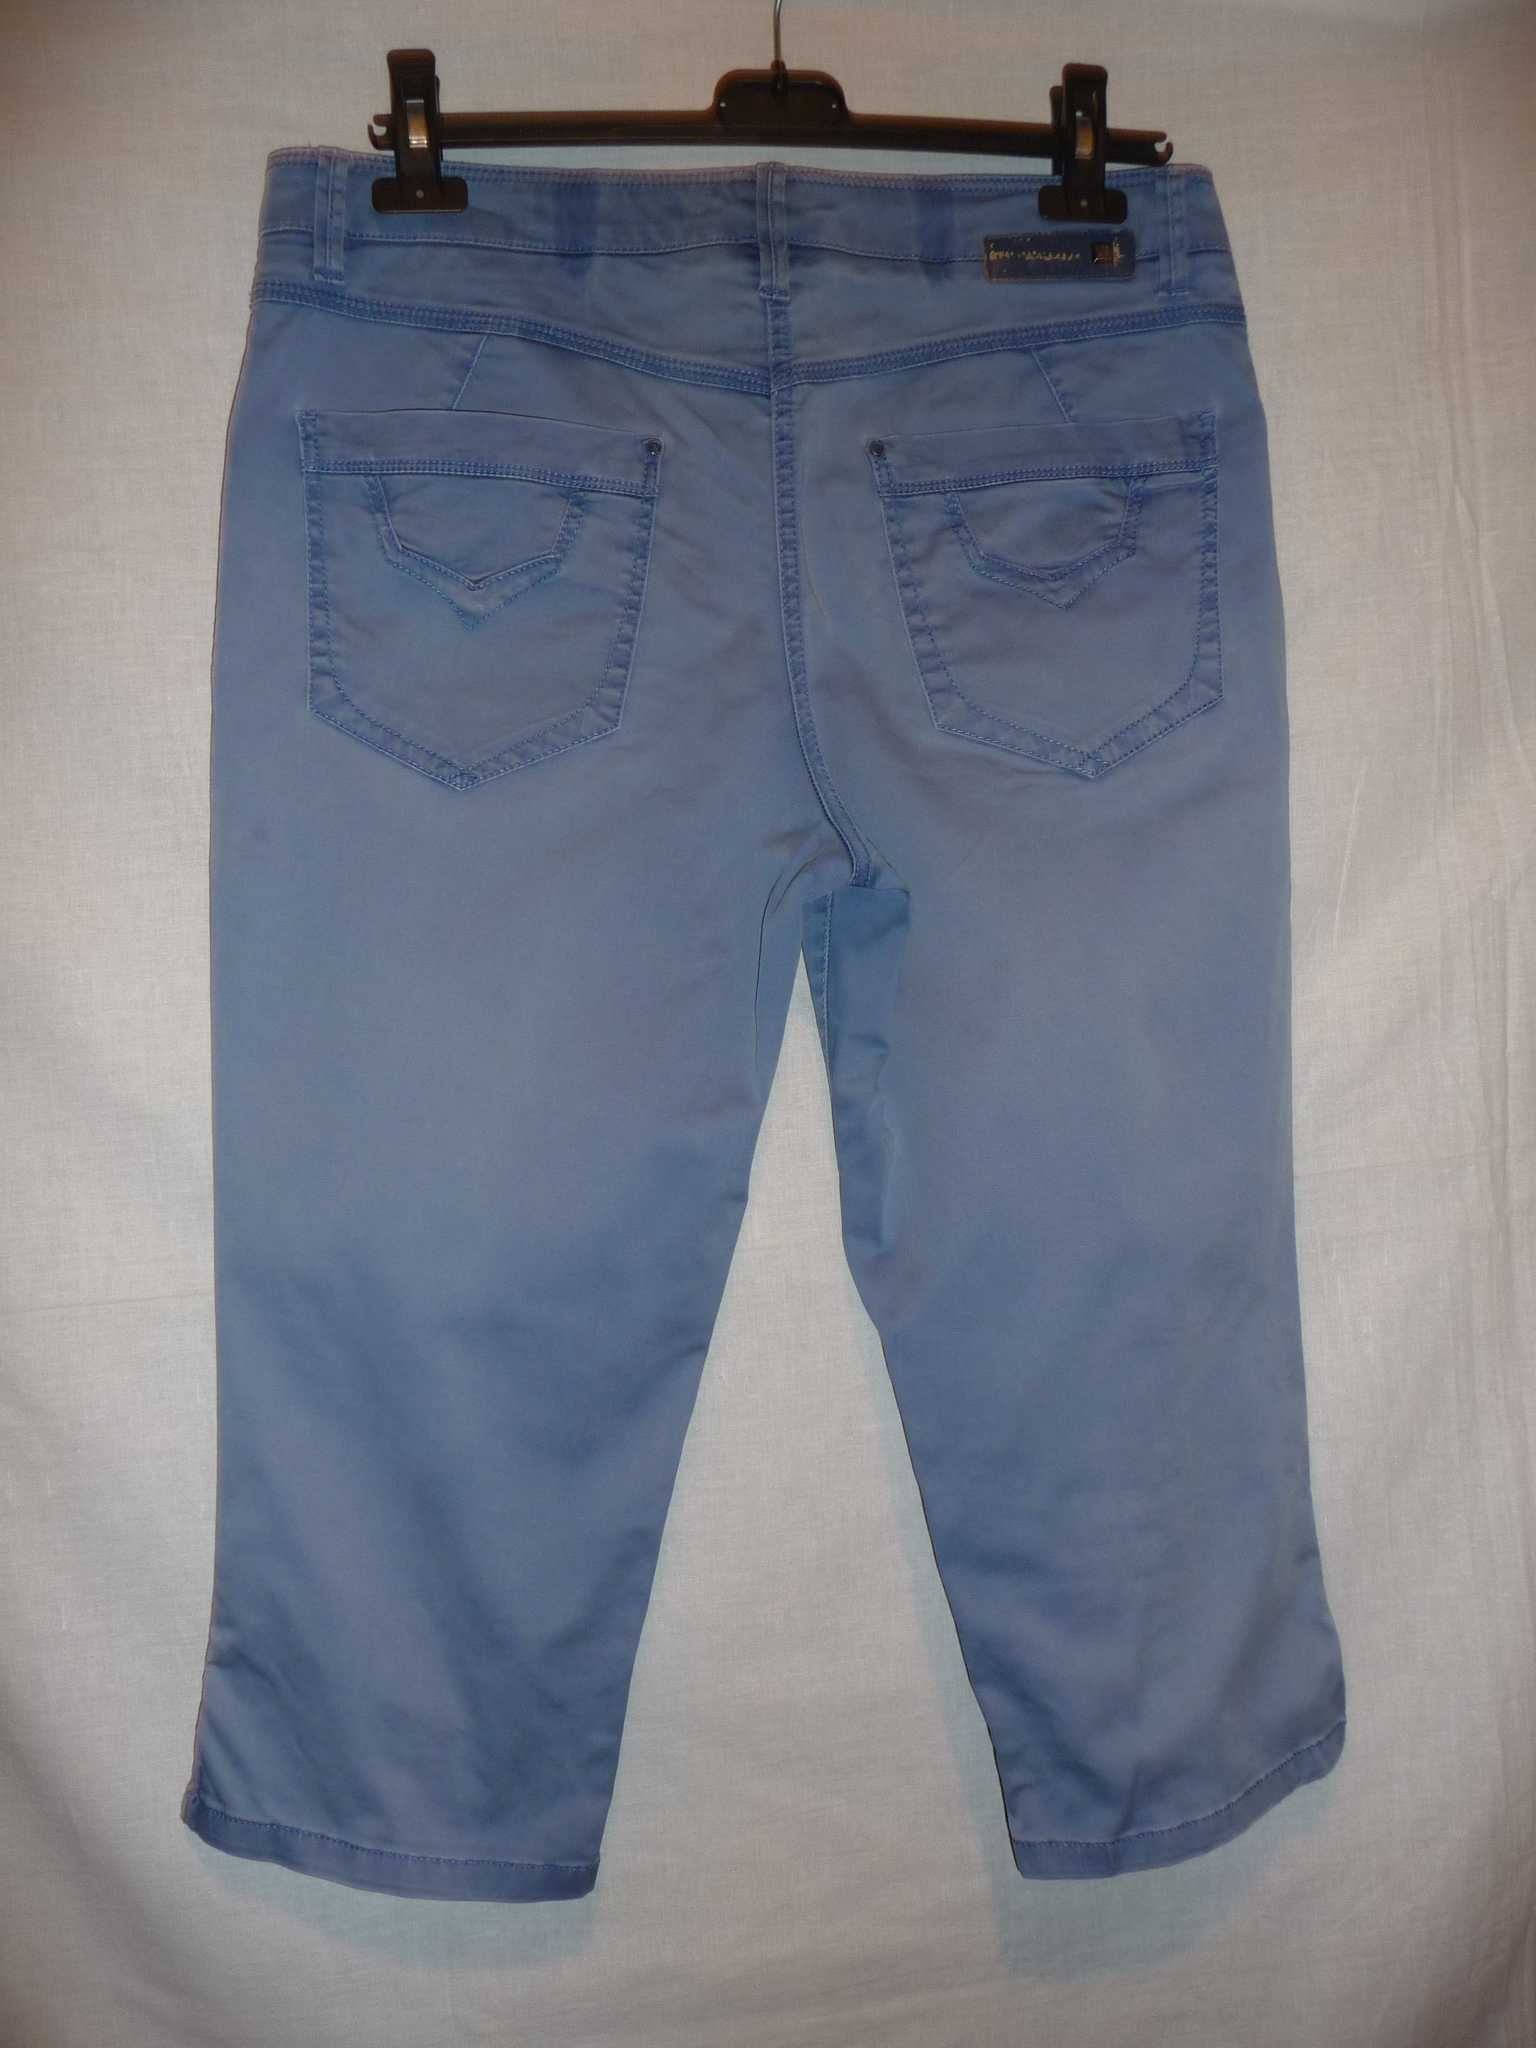 Spodnie 3/4 firmy Jocavi w błękitnym kolorze.